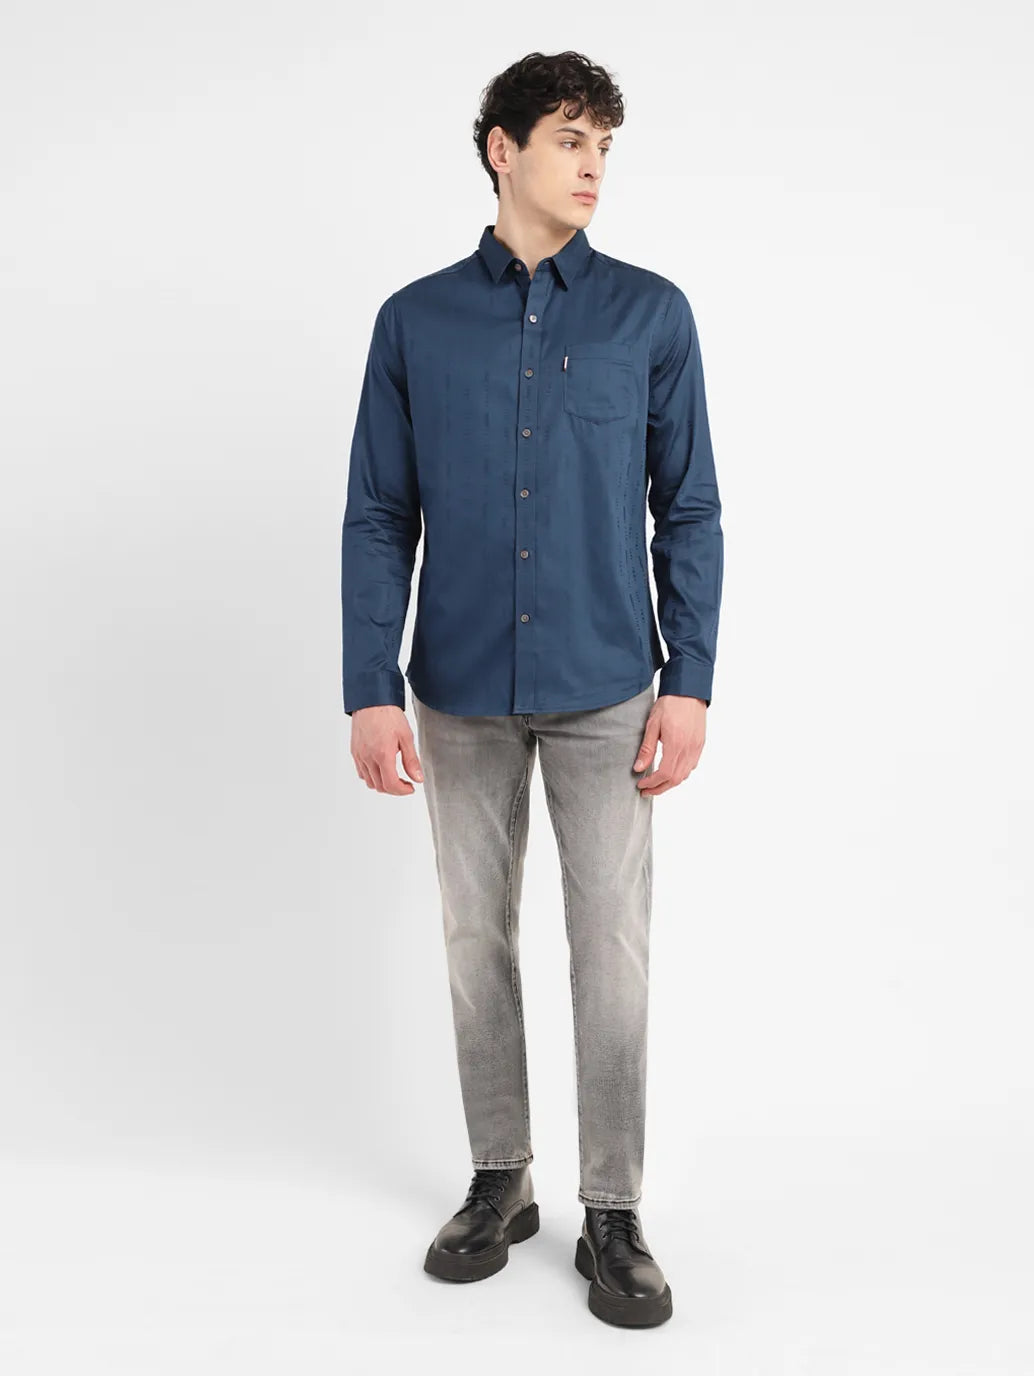 Men's Self Design Slim Fit Shirt